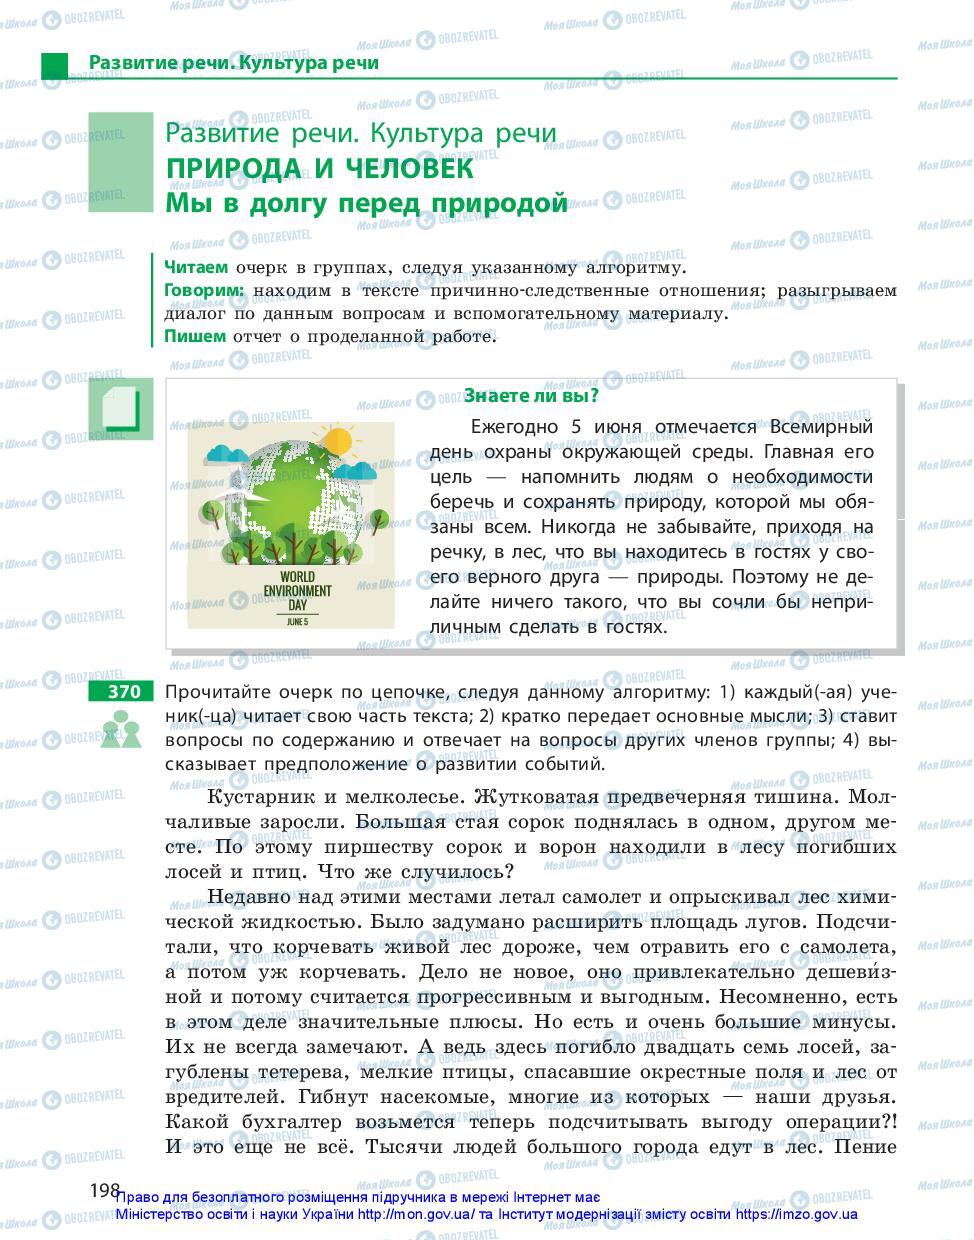 Учебники Русский язык 11 класс страница 198